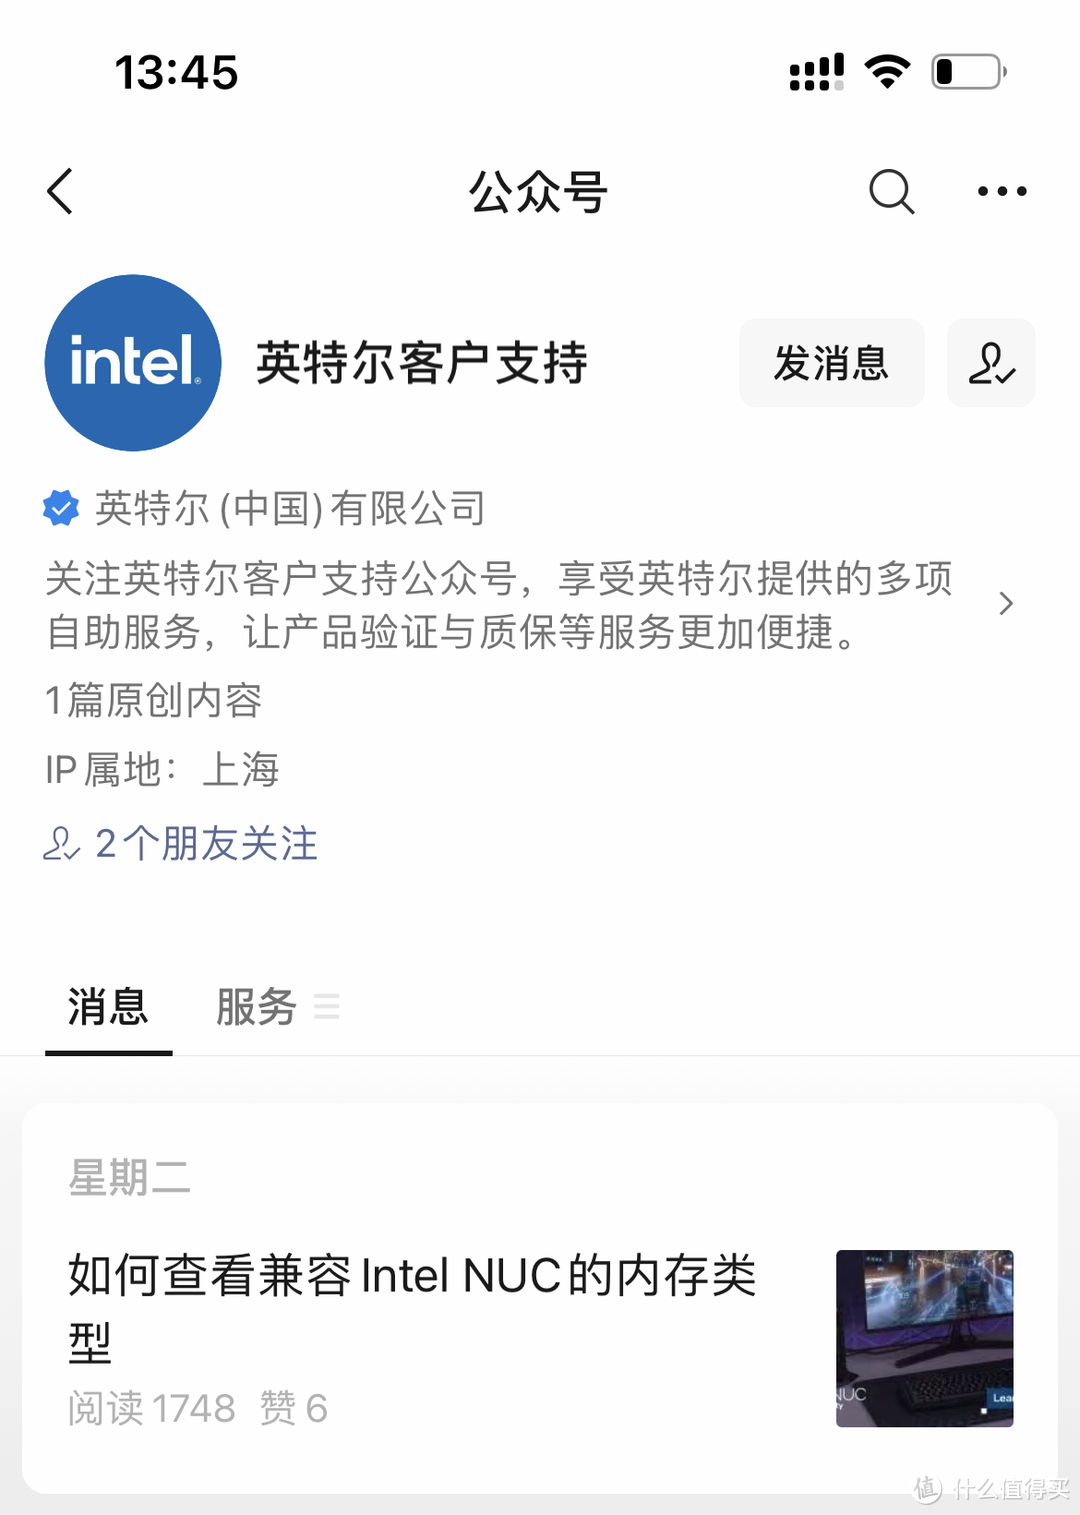 Intel NUC迷你电脑售后换新初体验